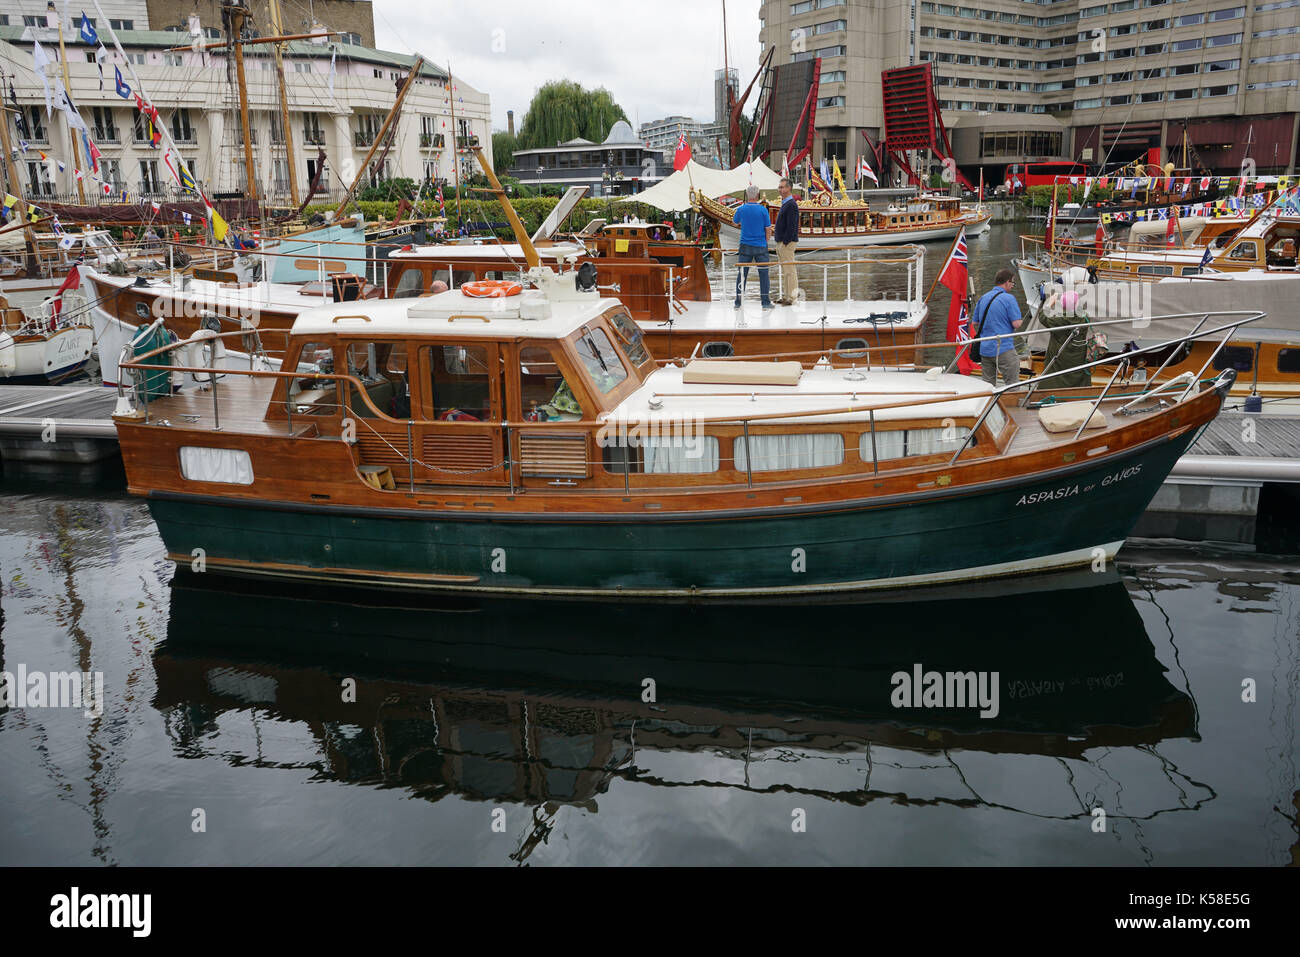 Londra, Inghilterra, Regno Unito. 8 settembre 2017. il nono anno di classic boat festival presso il st. Katharine Docks, Londra, Regno Unito. Foto Stock